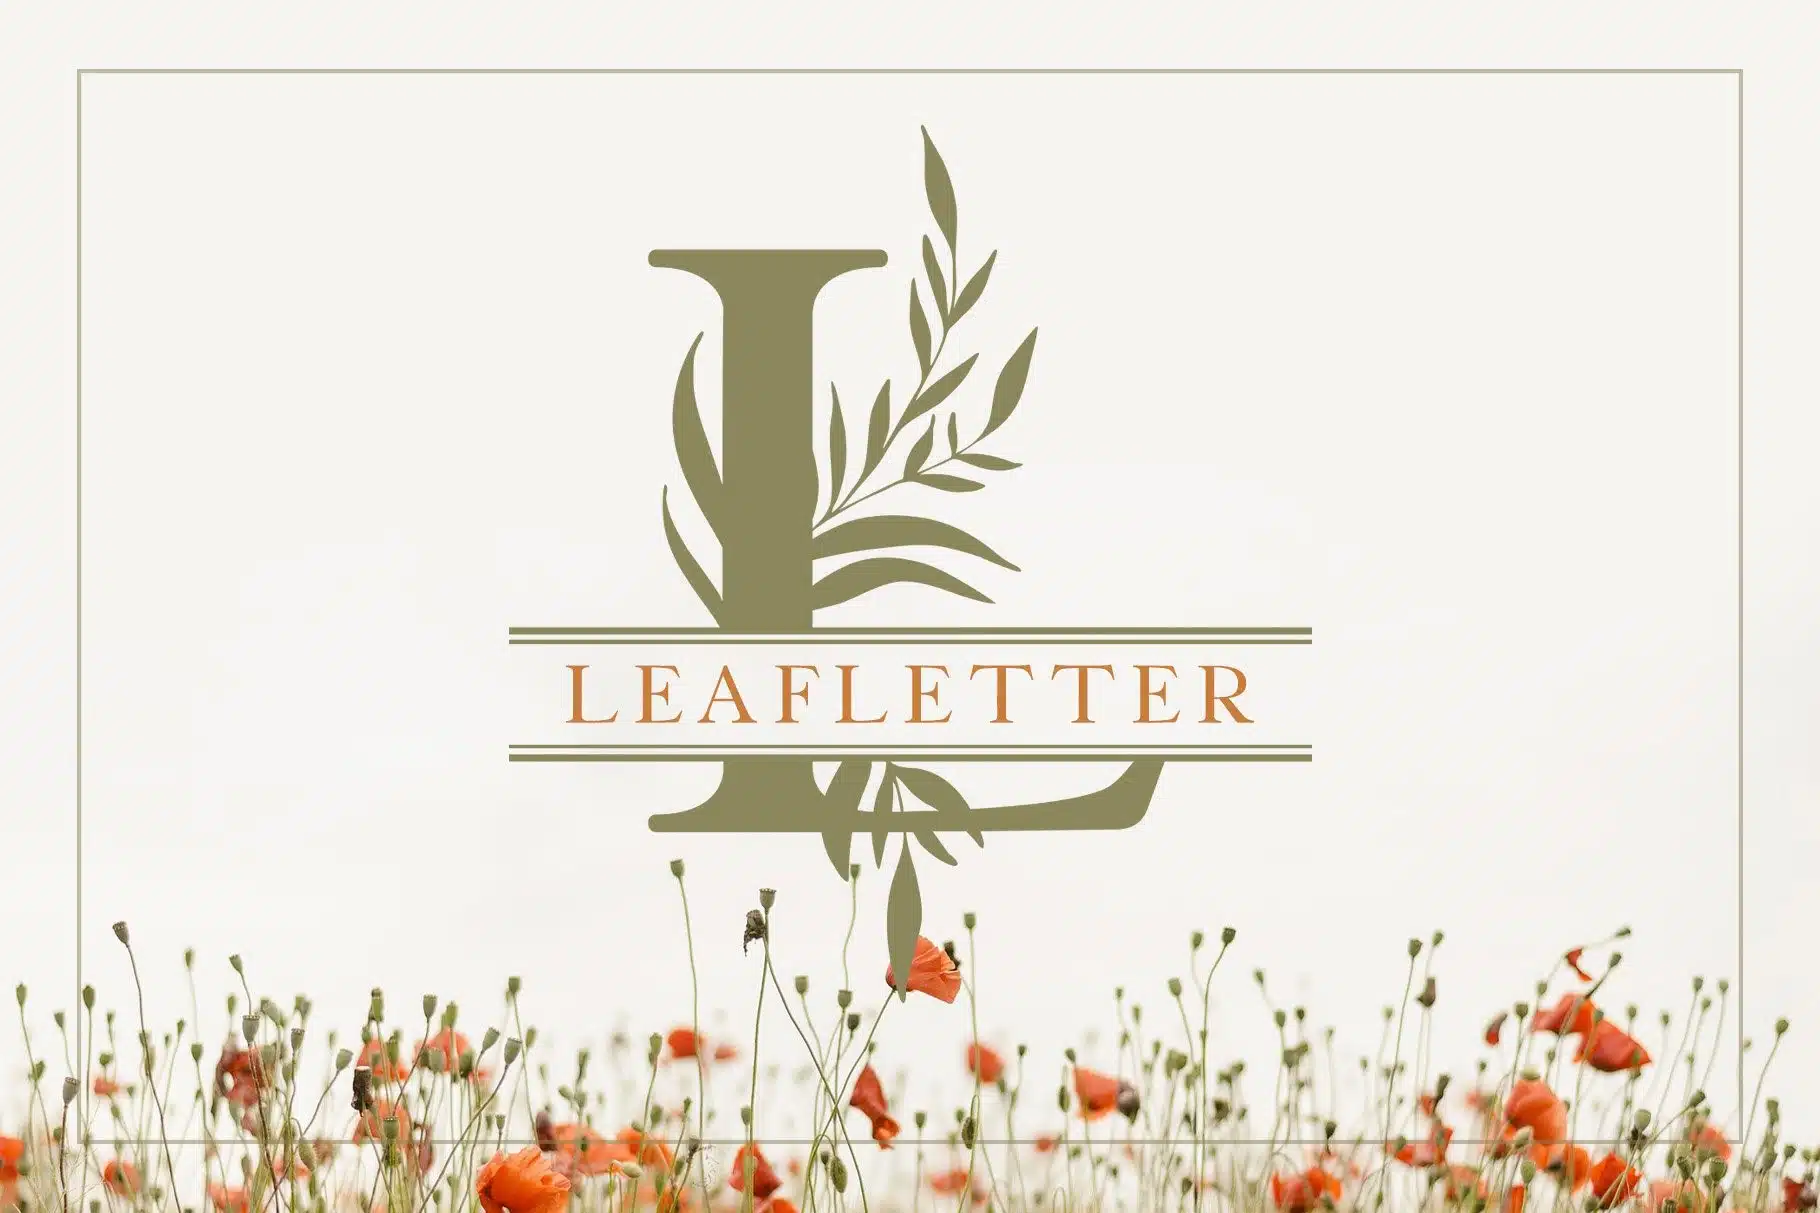 leafletter leaf font